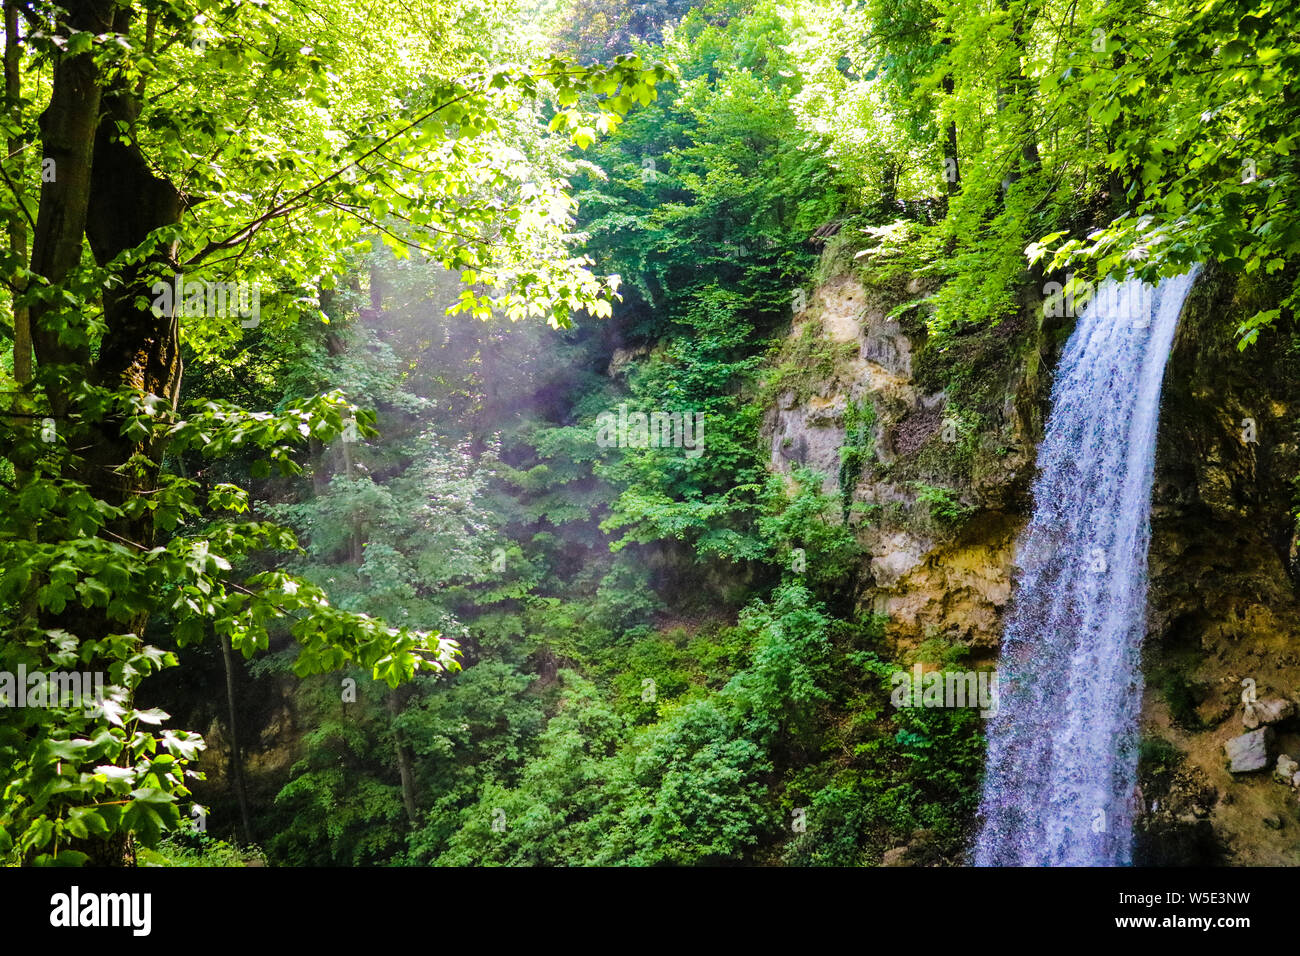 La magica atmosfera di una cascata nel verde delle foreste in una giornata di sole Foto Stock